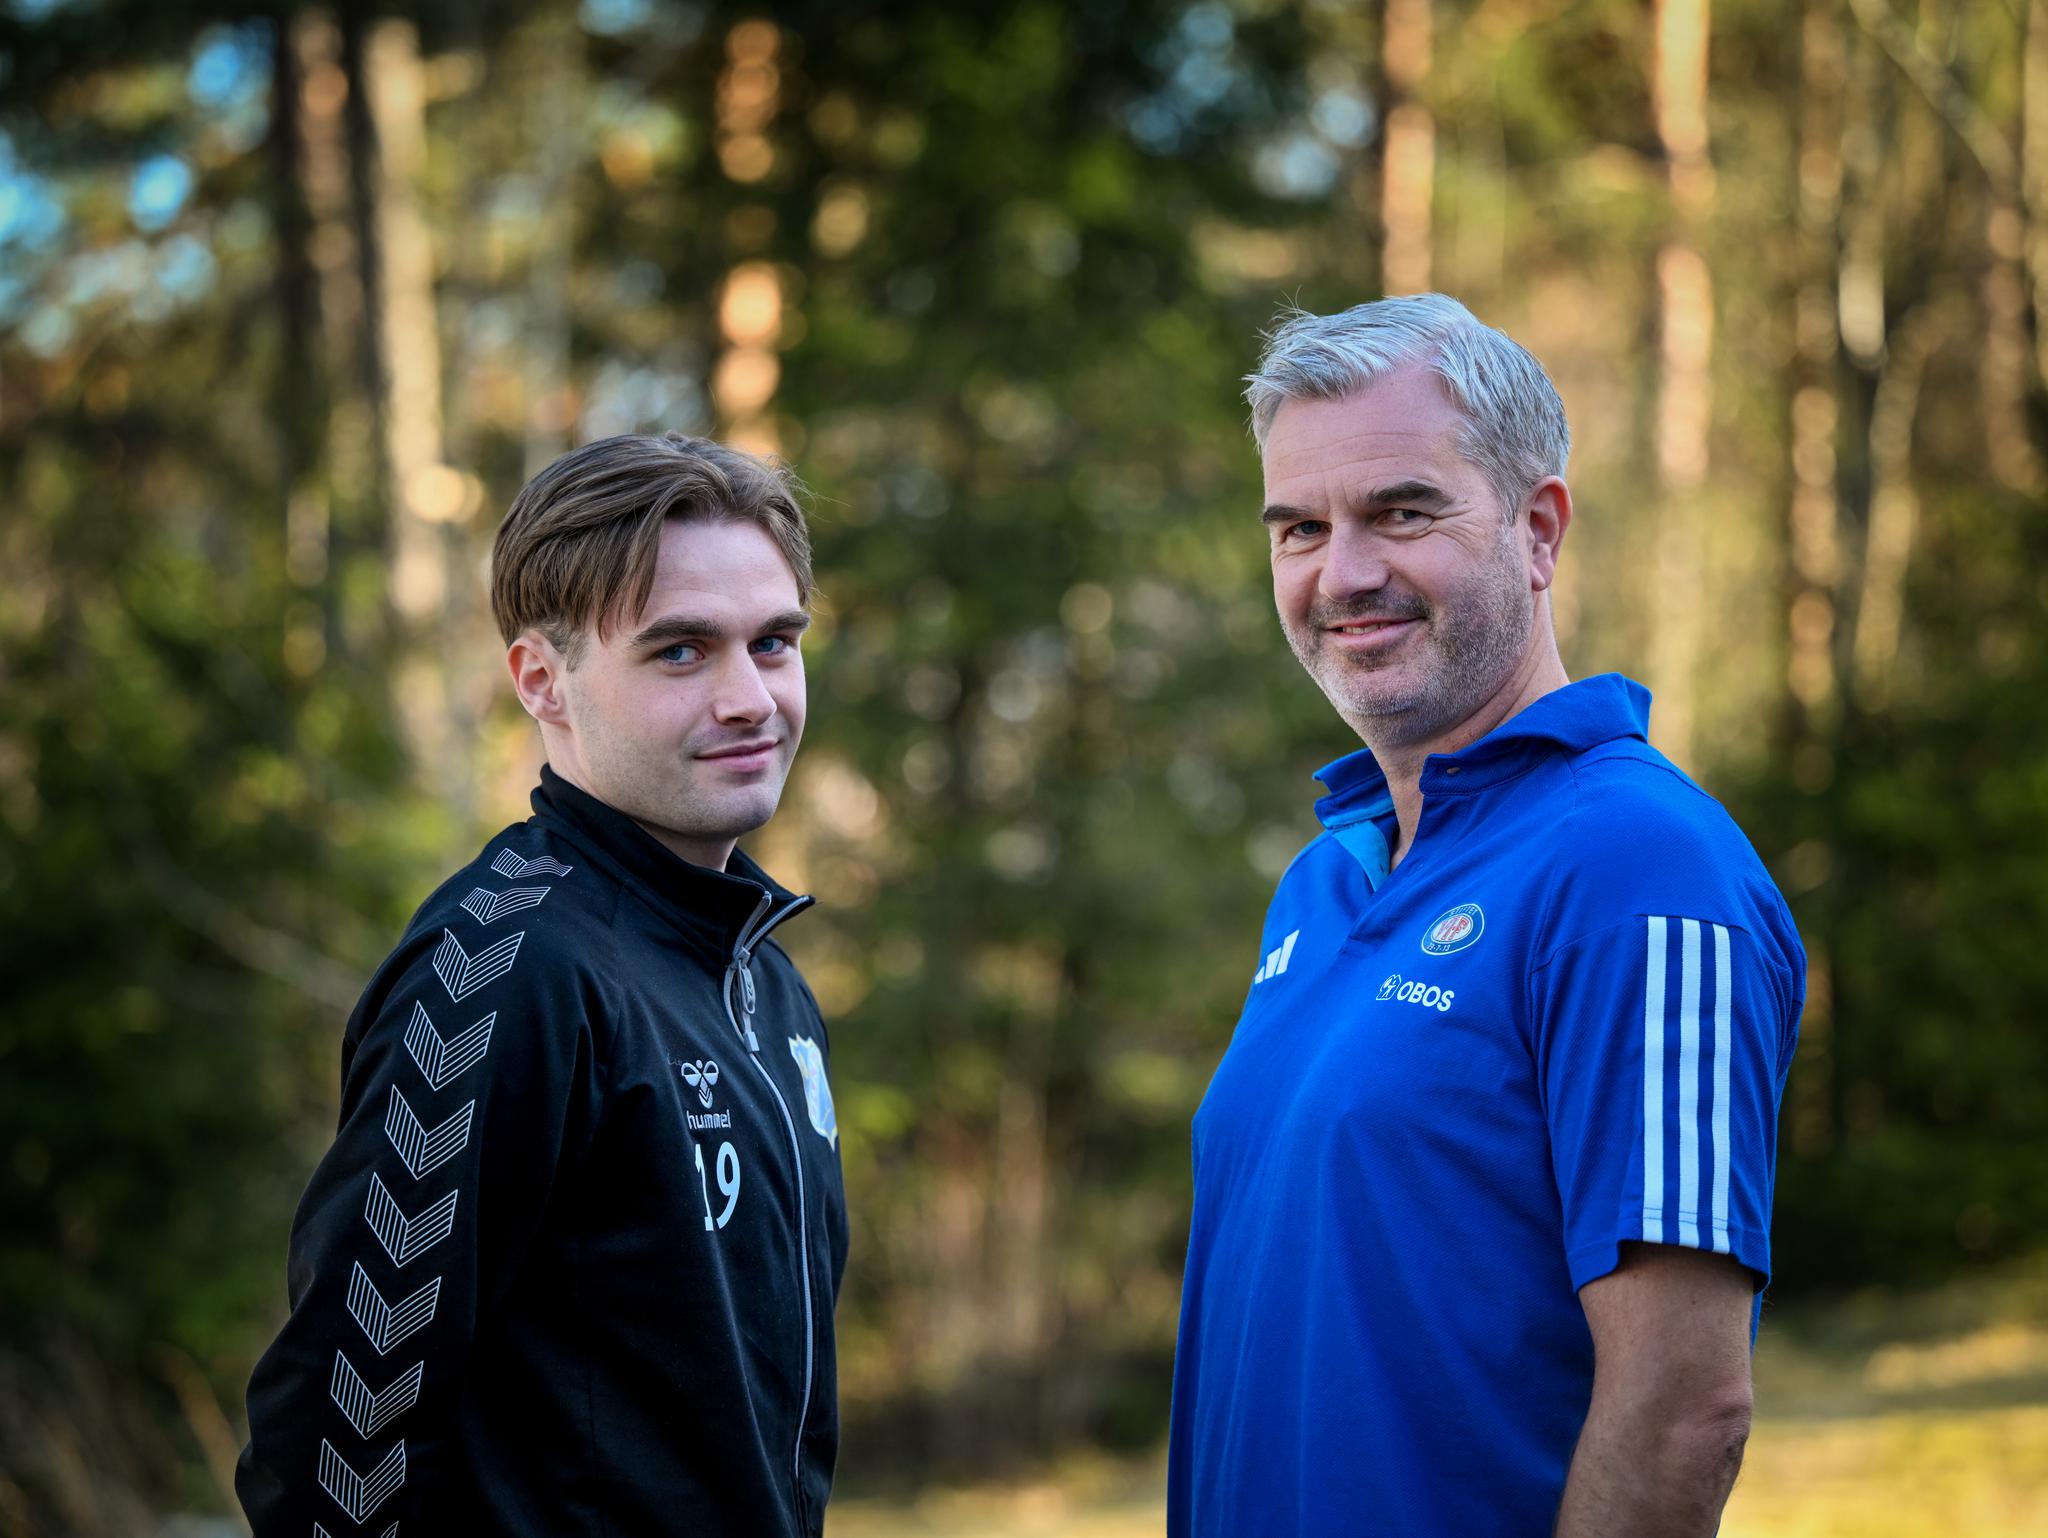  For første gang på 15 år møtes Lyn og Vålerenga i en seriekamp. Da er sønn Tobias og far Petter Myhre på hvert sitt lag.